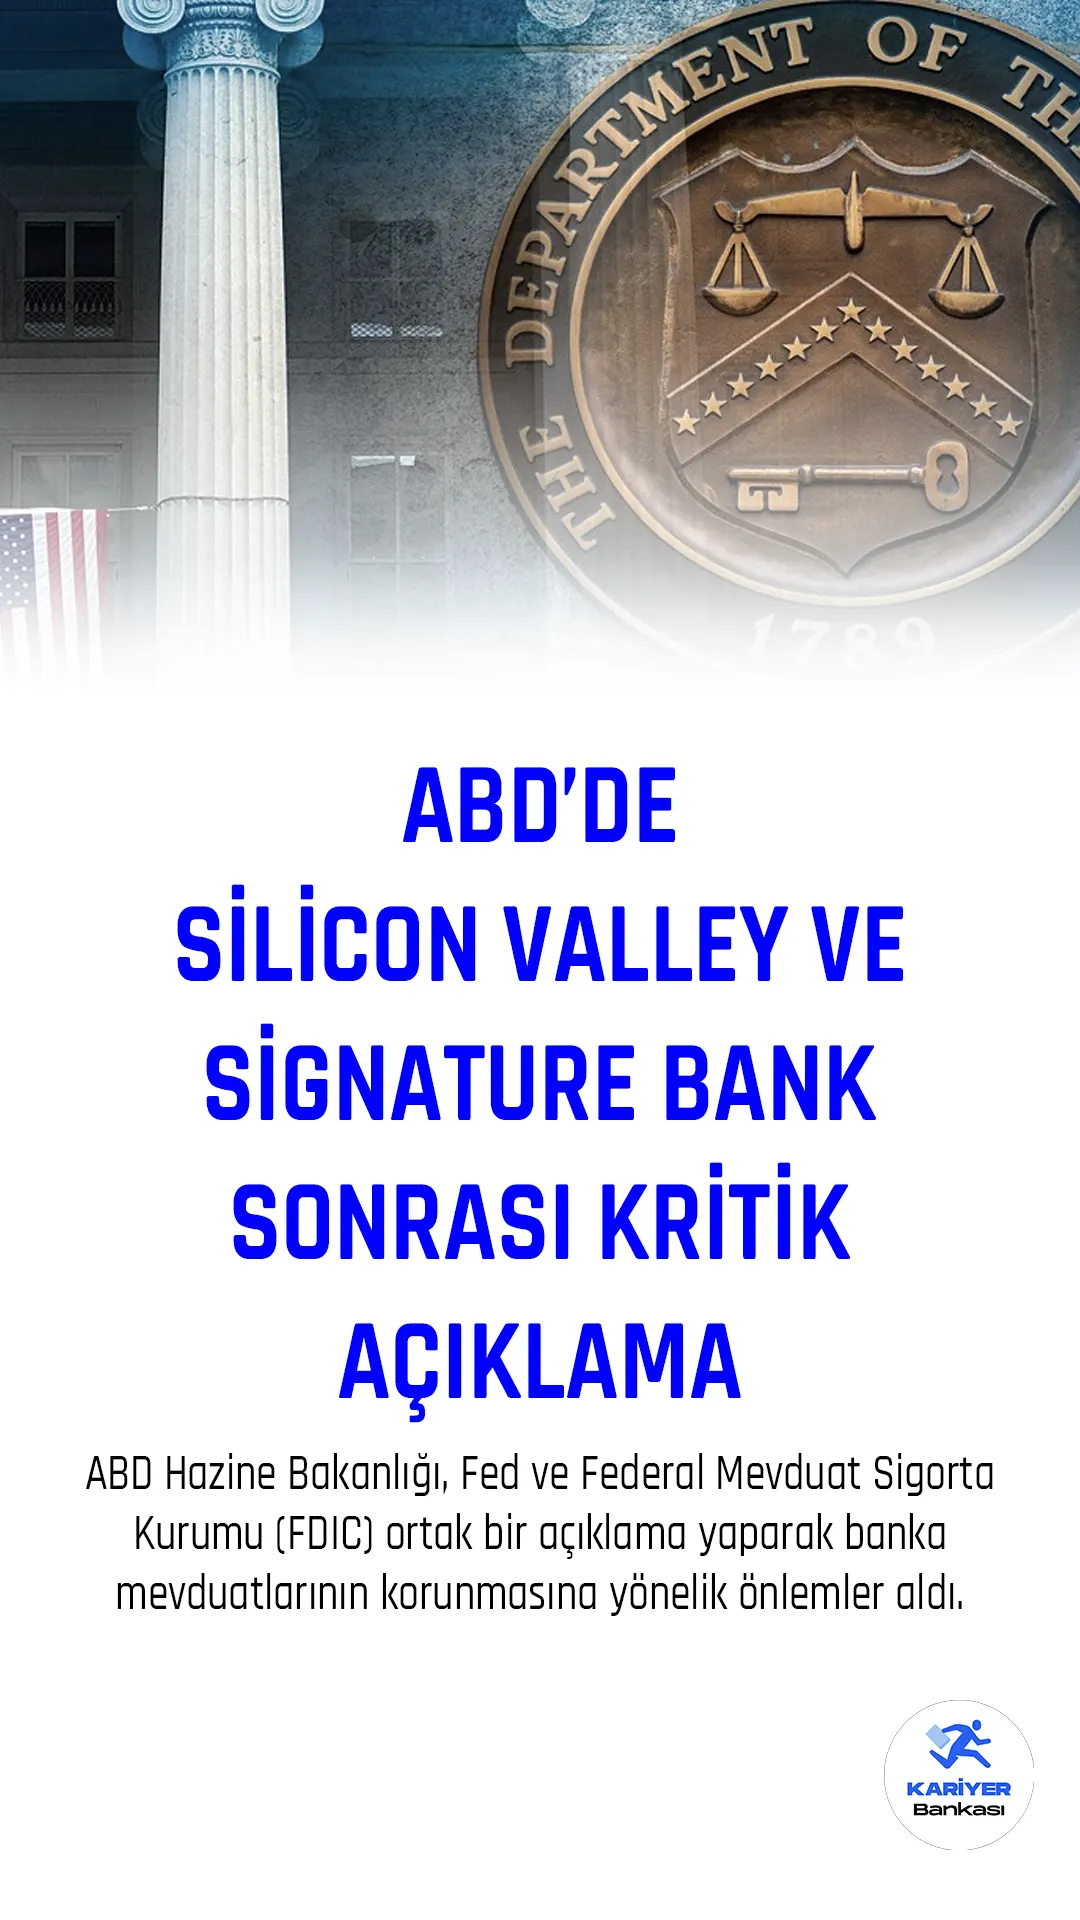 ABD'de Silicon Valley Bank ve Signature Bank Krizi Sonrası Kritik Açıklamalar art arda geldi...